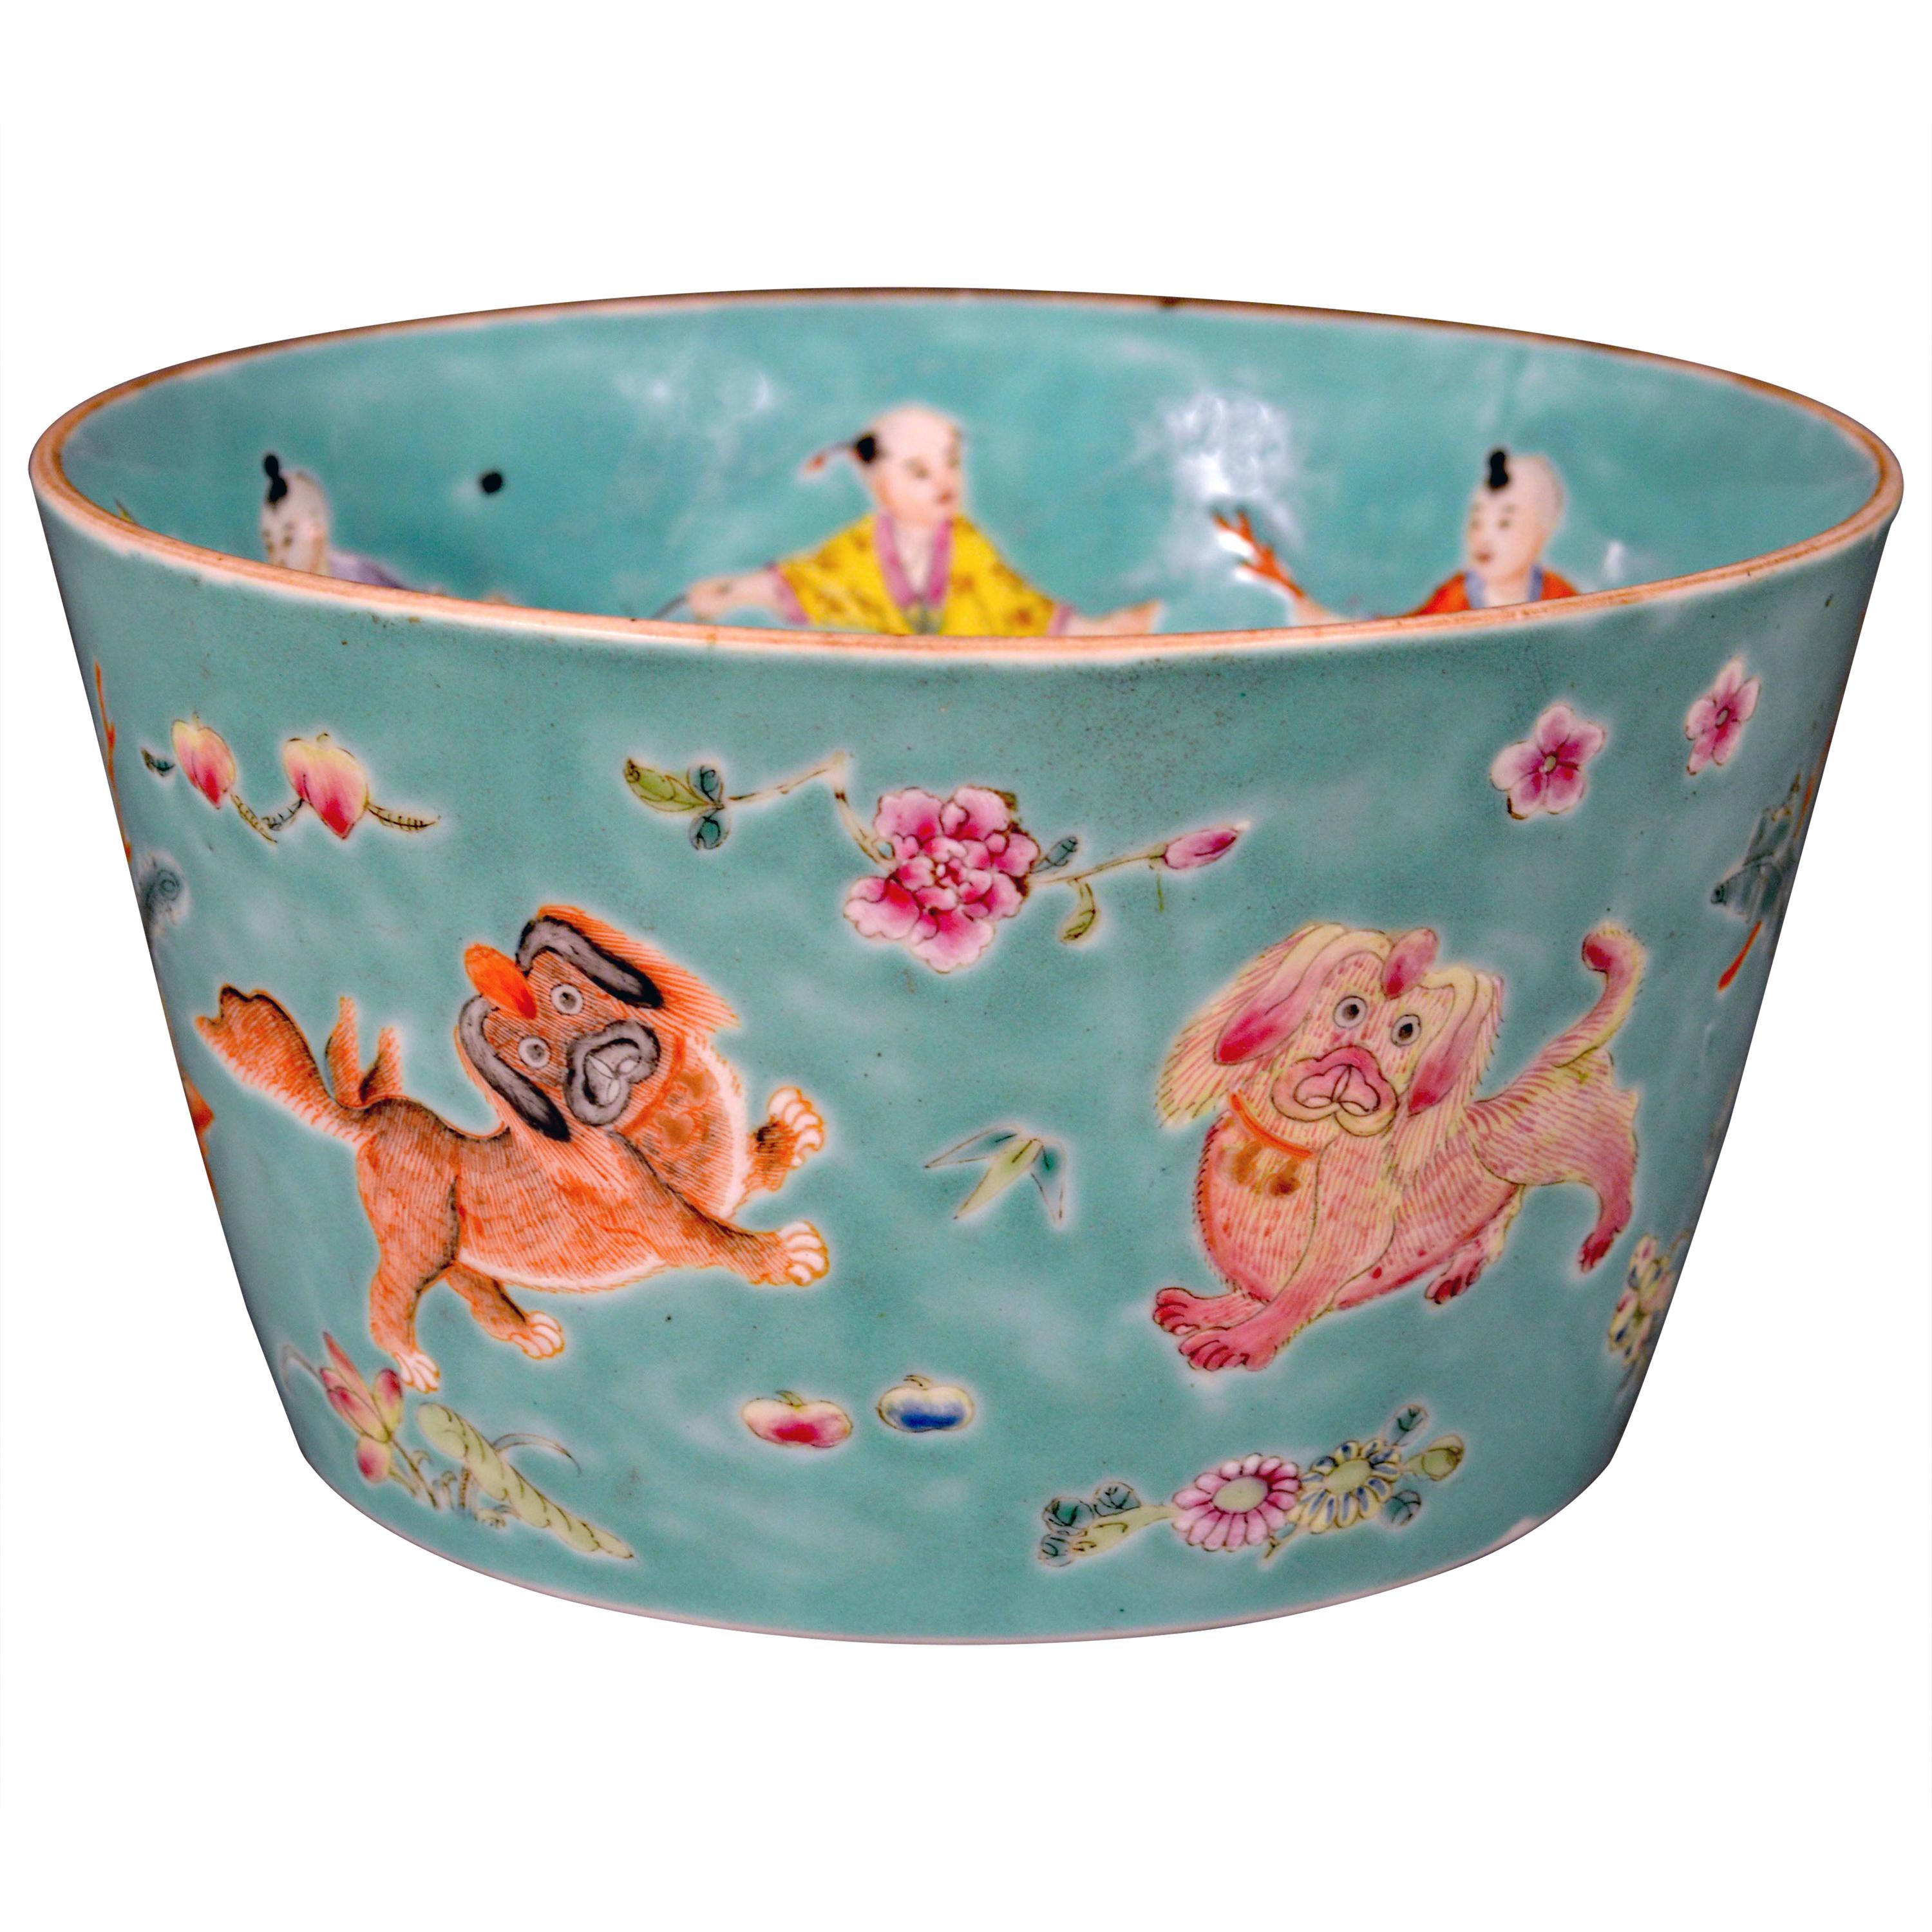 Chinese Porcelain Turquoise Jardinière of Bowl with Chinese Boys & Pekingese Dog